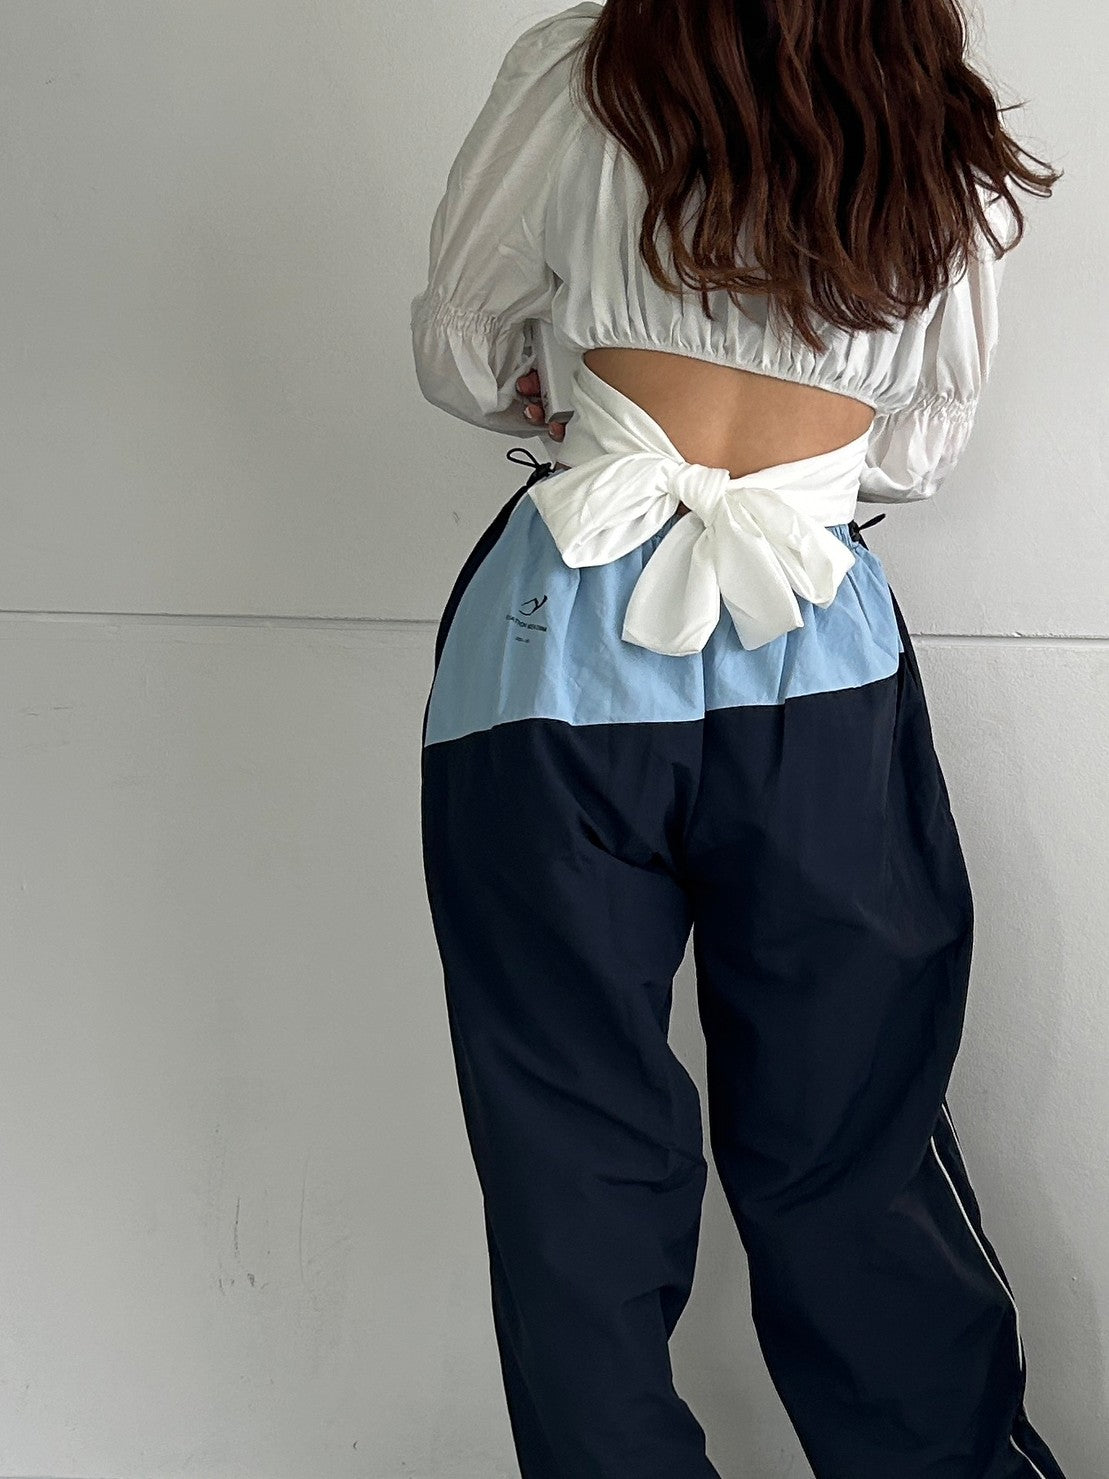 komugi's select-ツーカラーラインパンツ| own it(オウンイット)公式| 多系統女子| 多系統ファッション